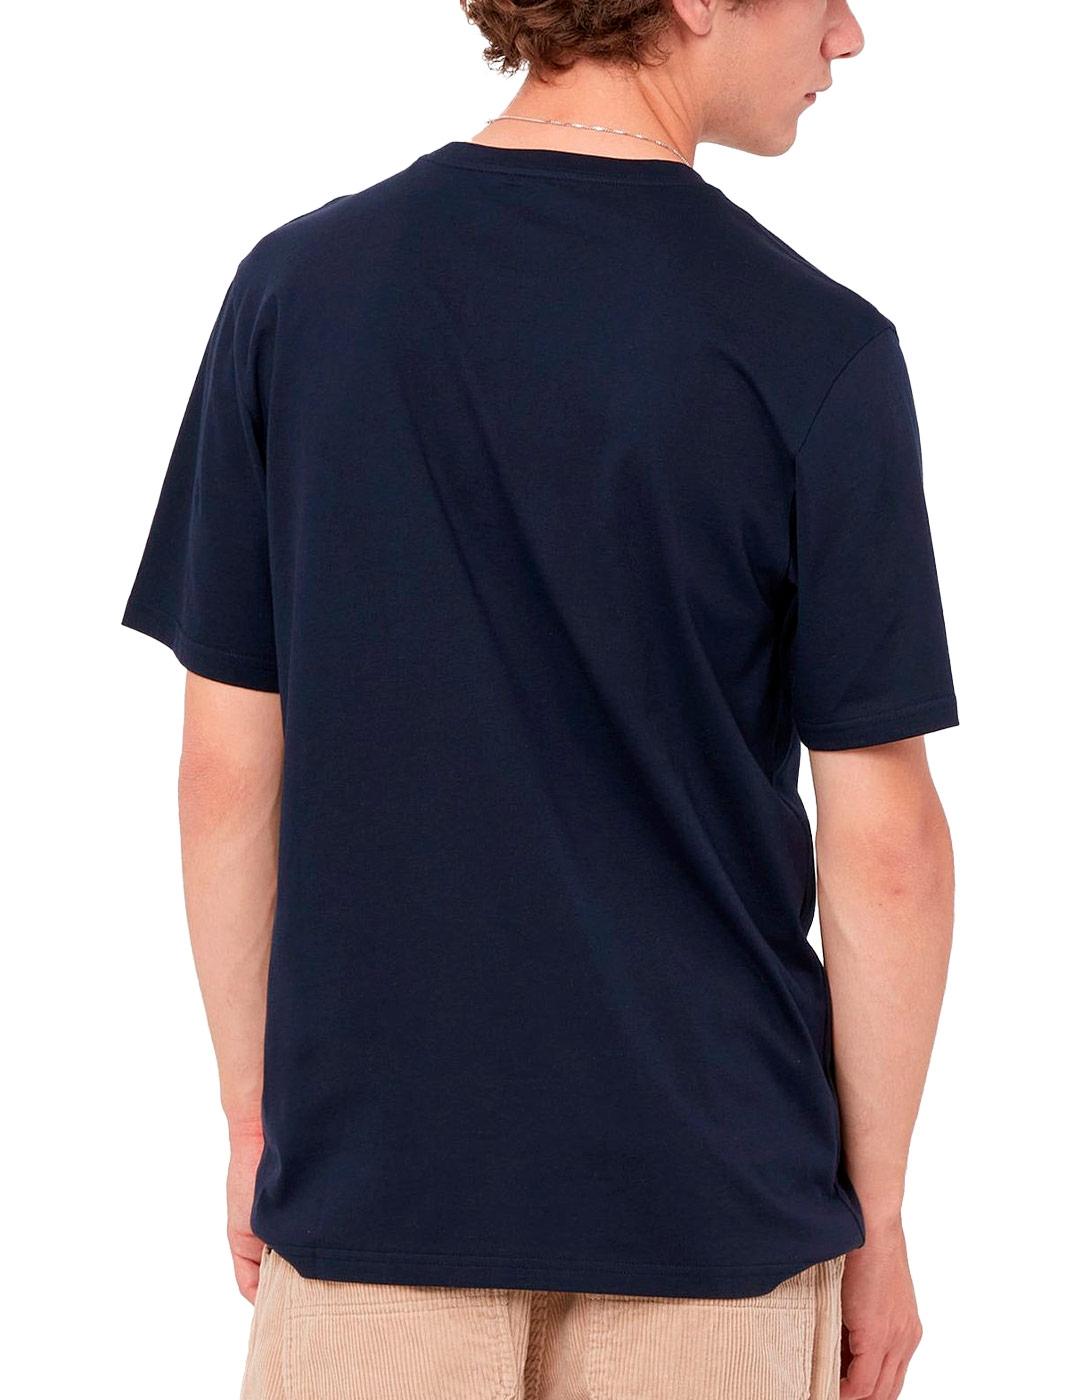 Camiseta Carhartt Pocket Marino